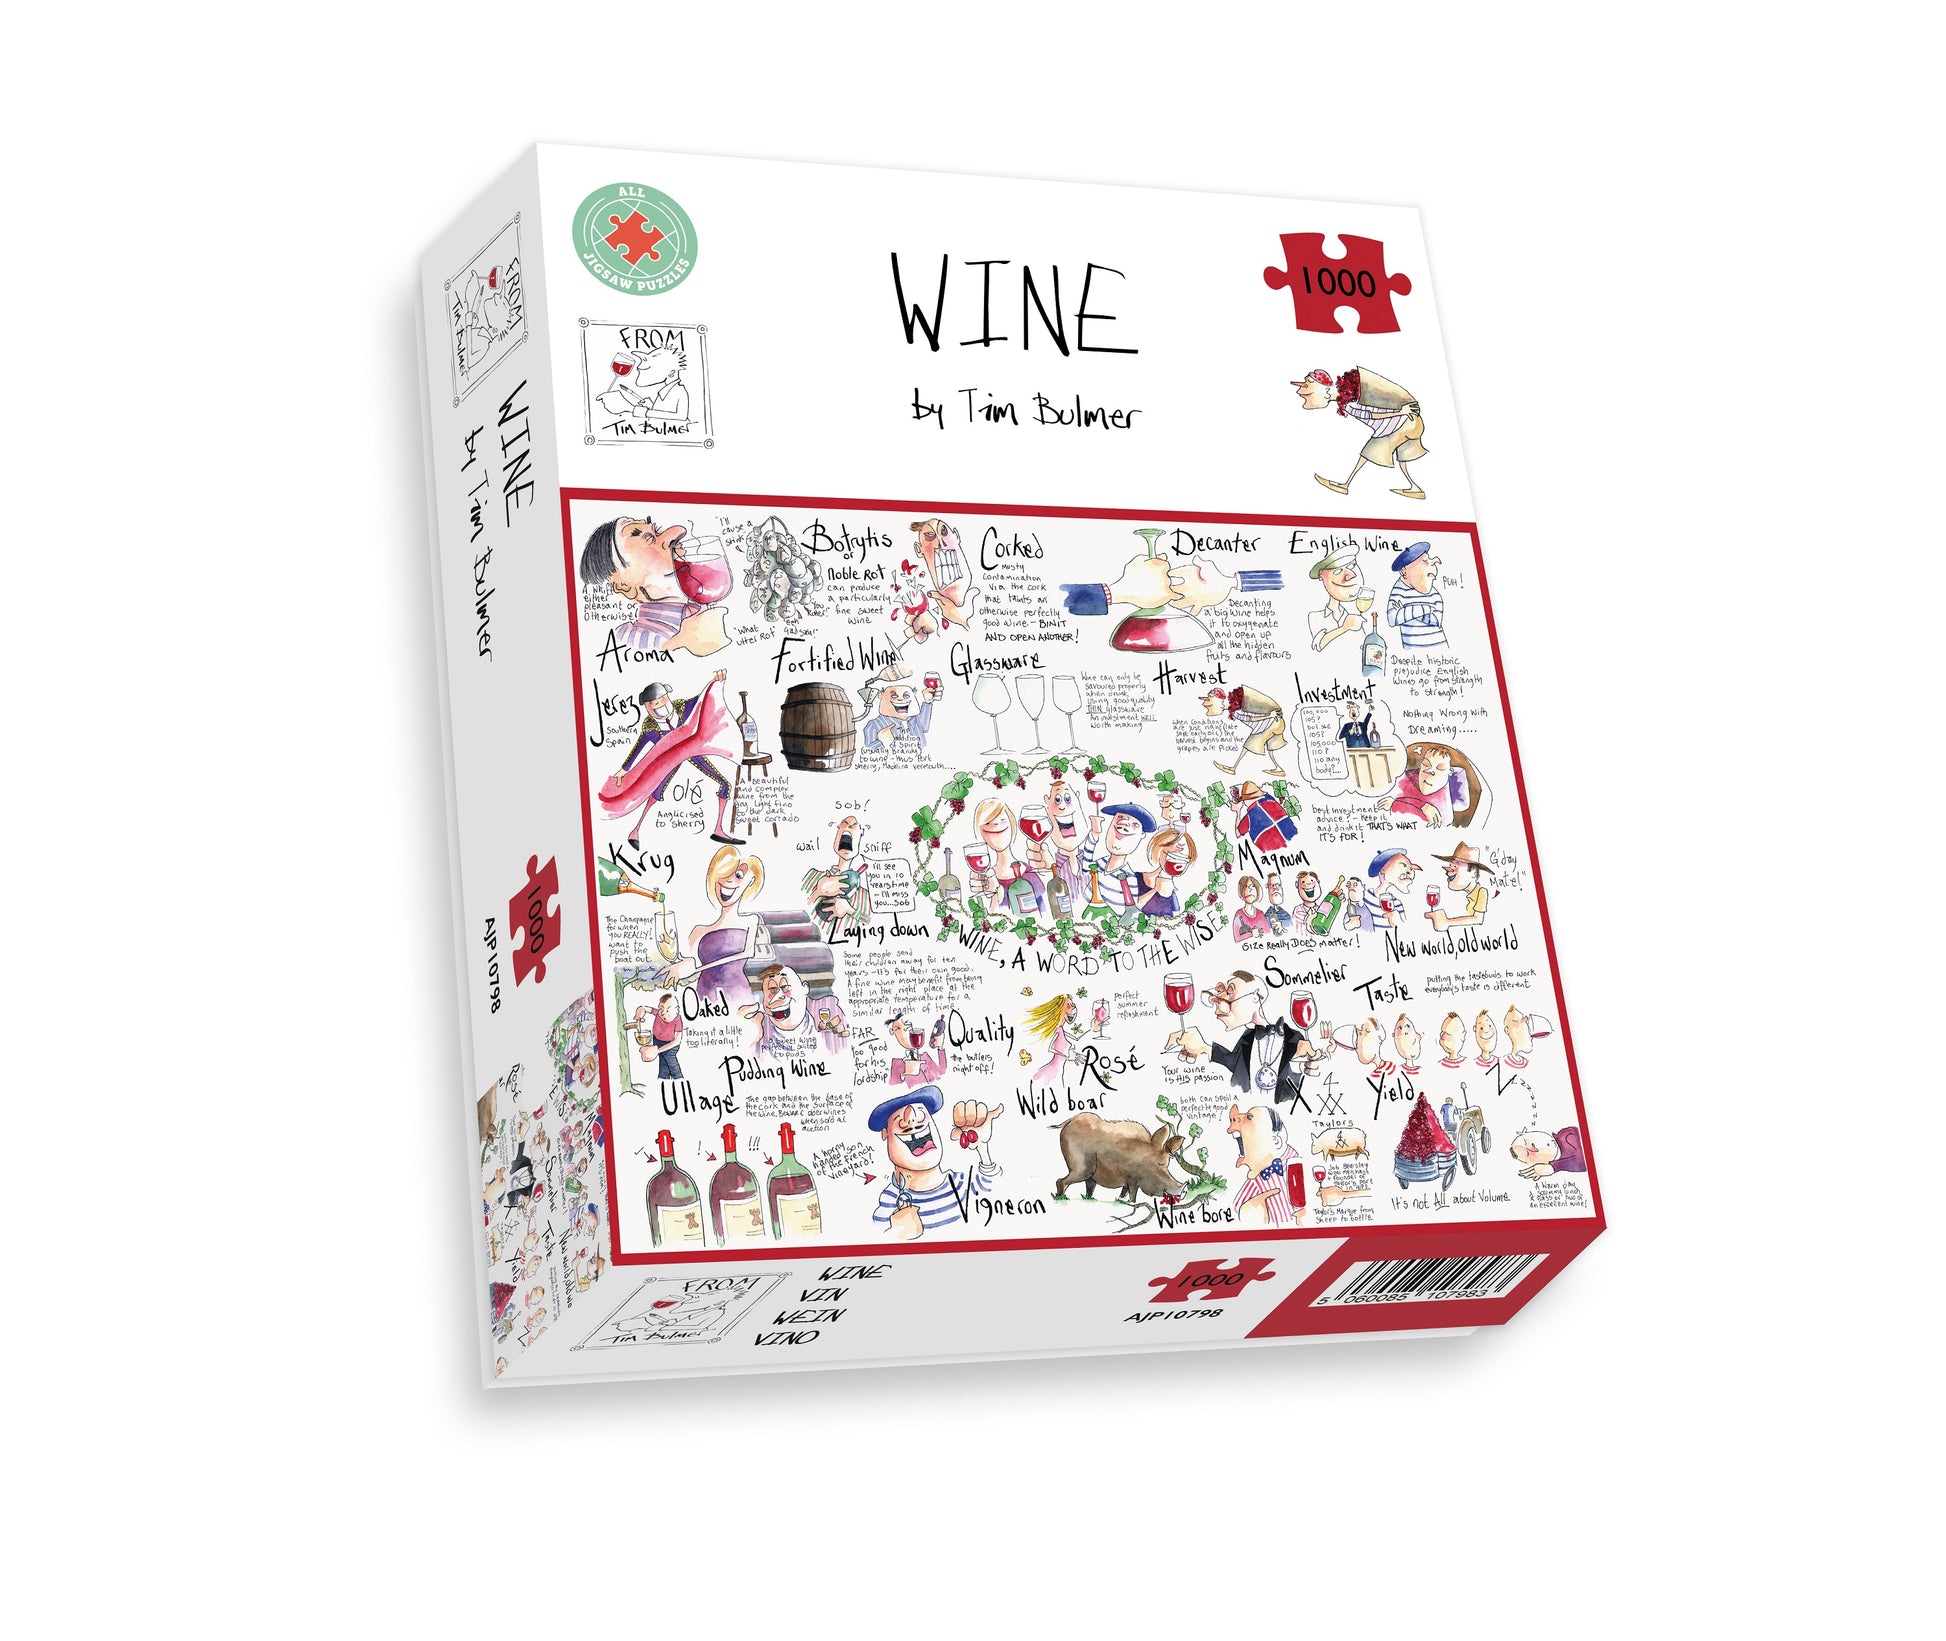 Wine - Tim Bulmer 1000 Piece Jigsaw Puzzle